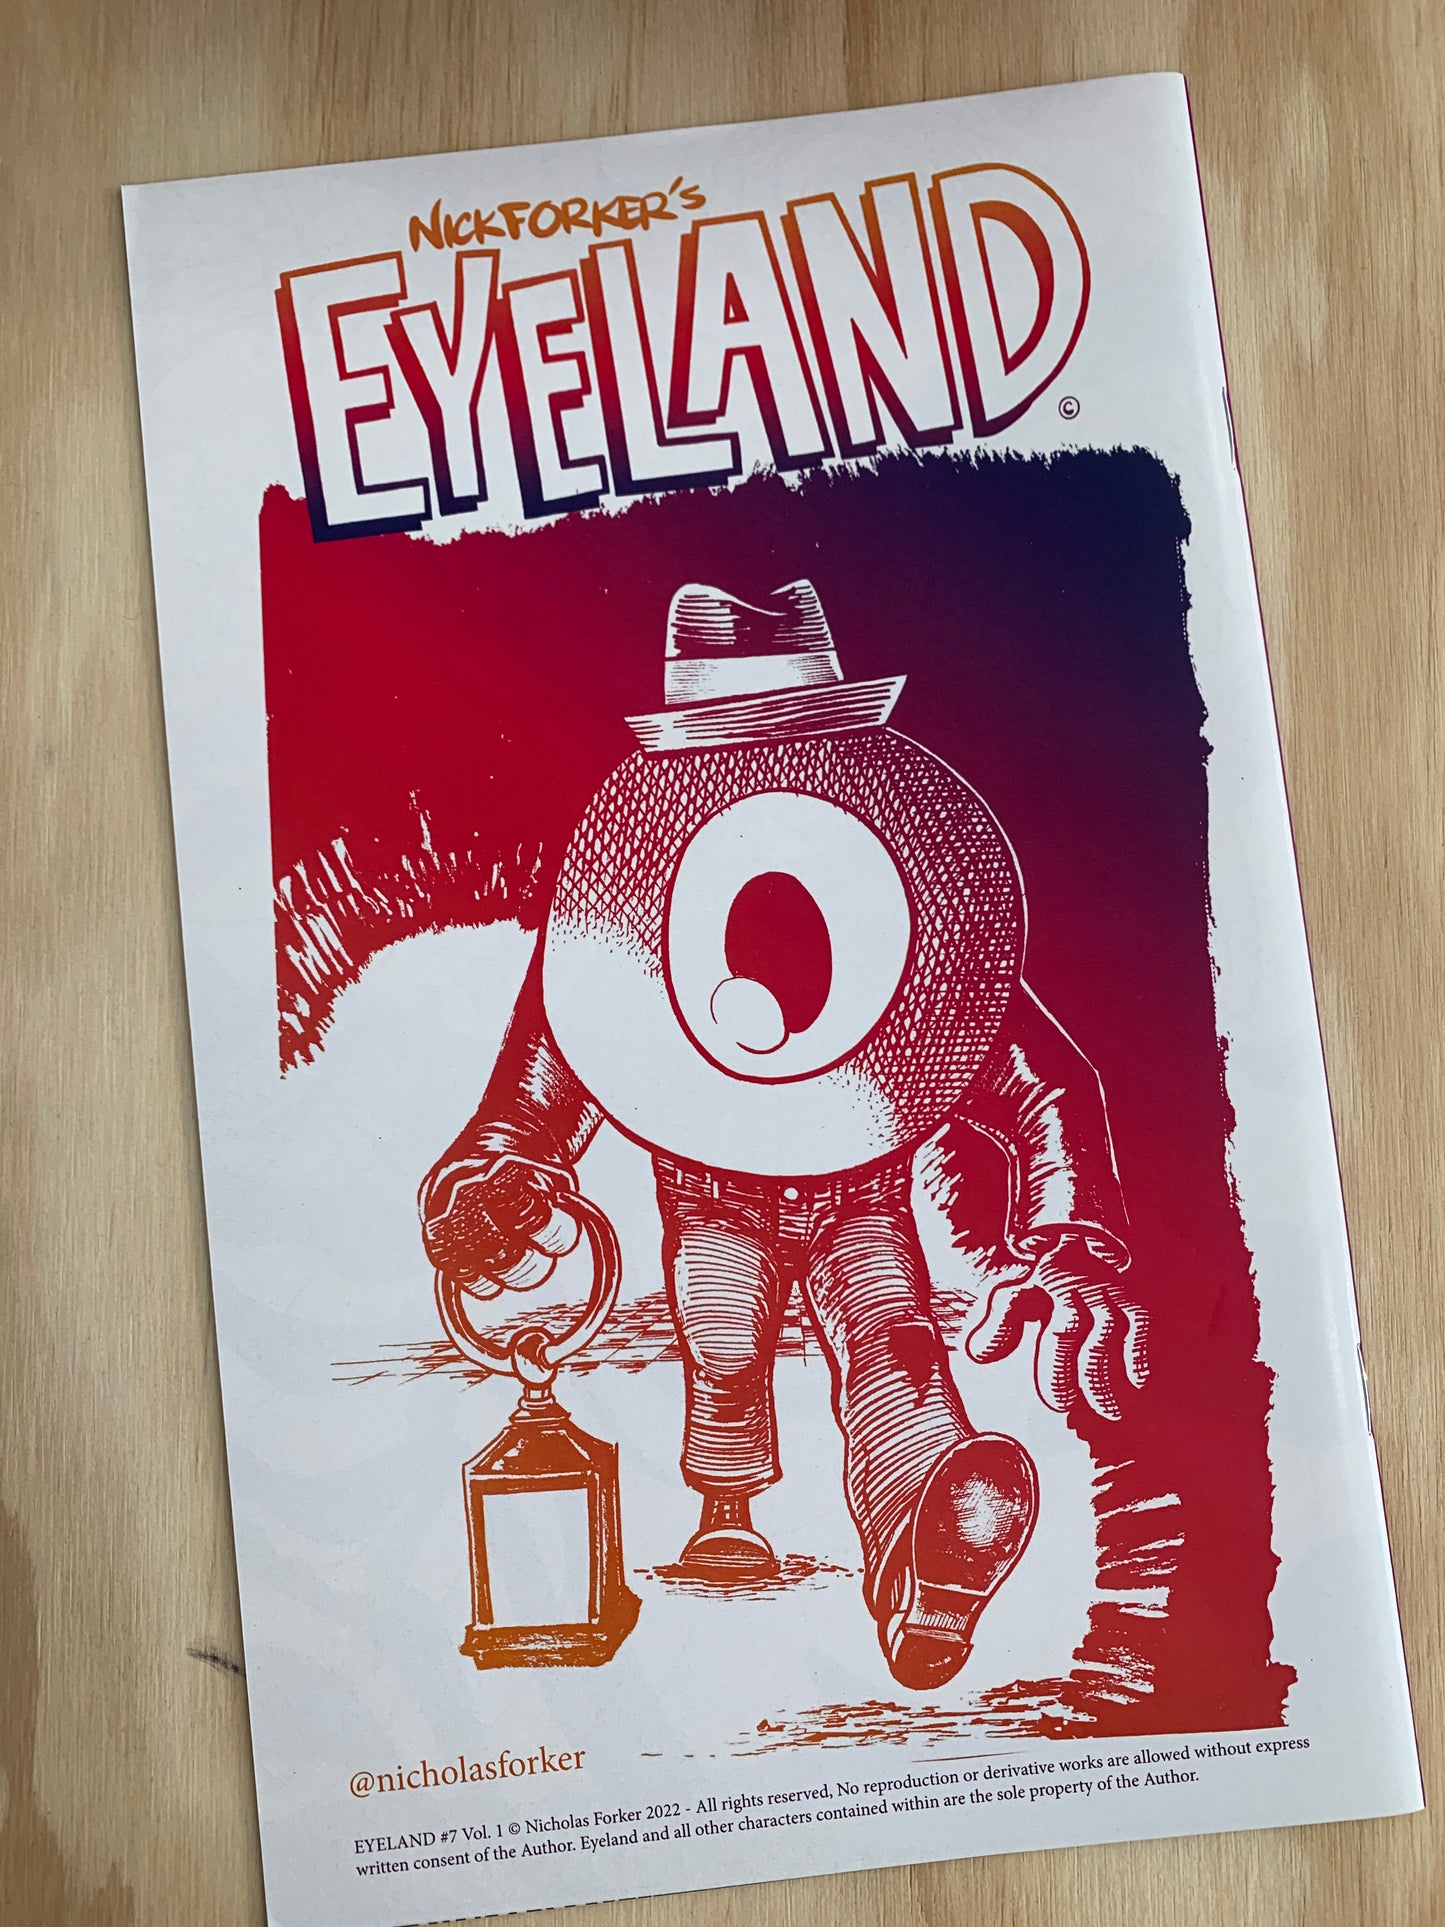 Eyeland #7